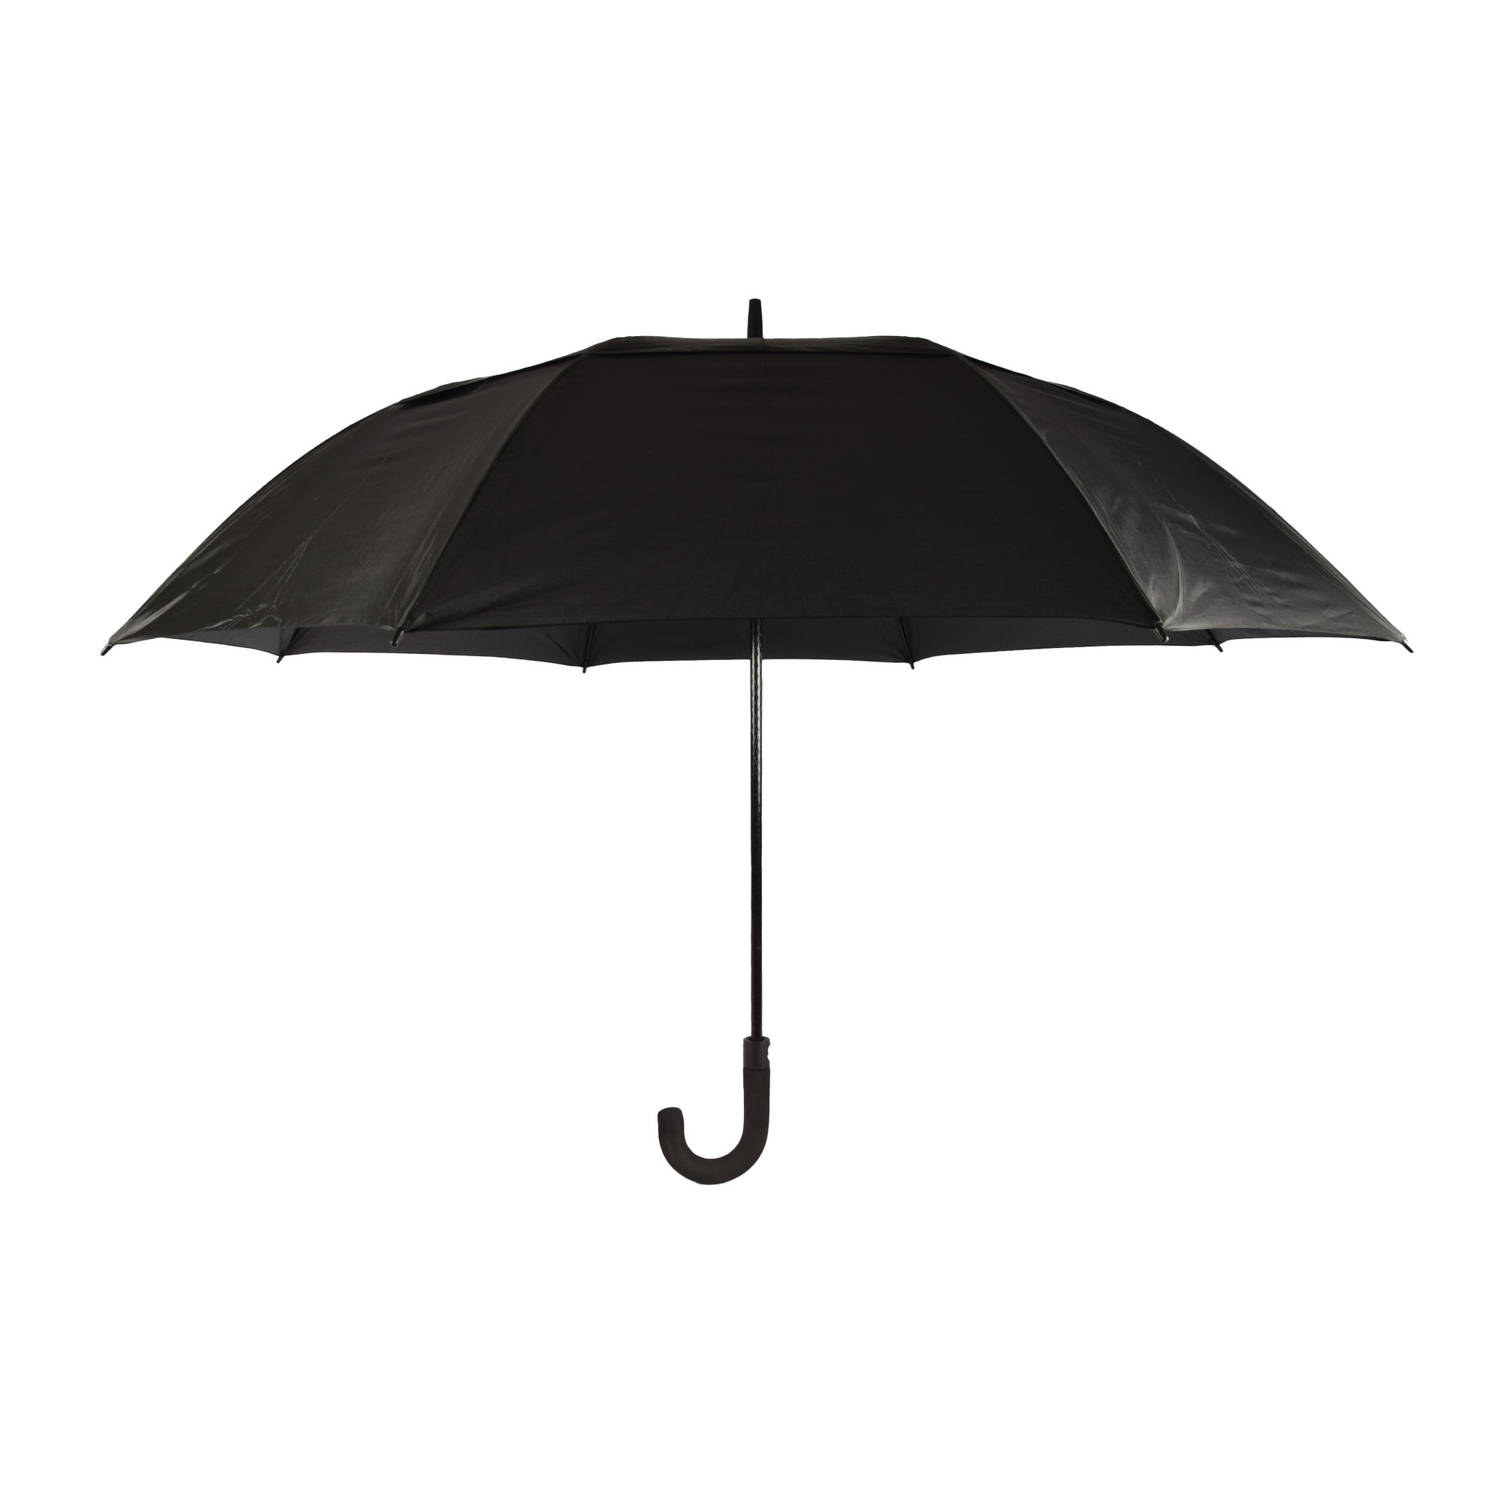 Discountershop Automatische Windproof Paraplu - Opvouwbaar met Beschermhoes - Zwart - 100cm Lengte - 130cm Diameter